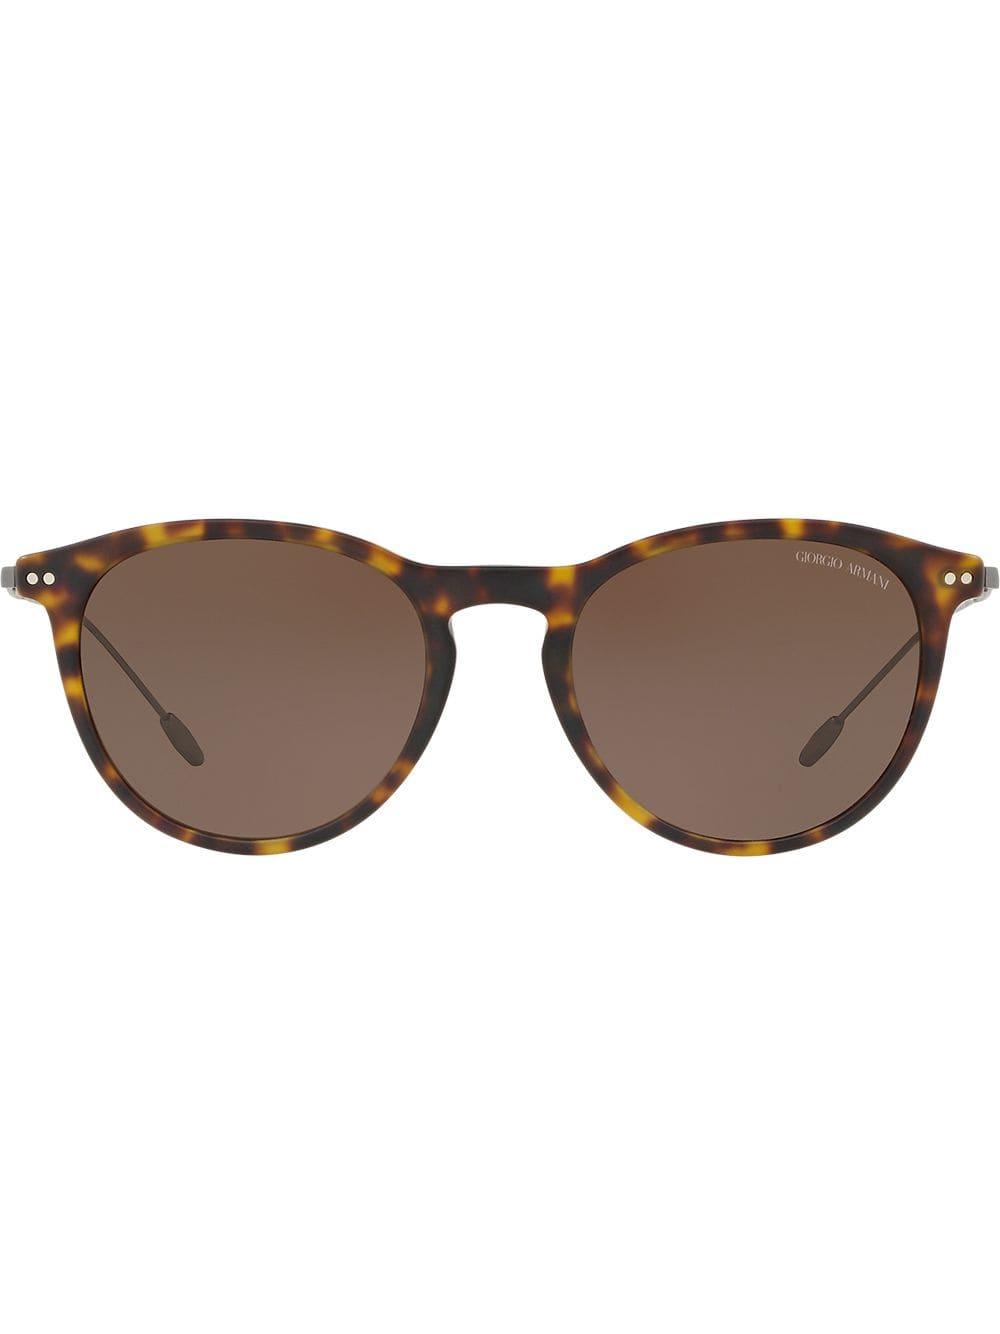 Giorgio Armani Round Tortoiseshell Sunglasses in Brown for Men - Lyst